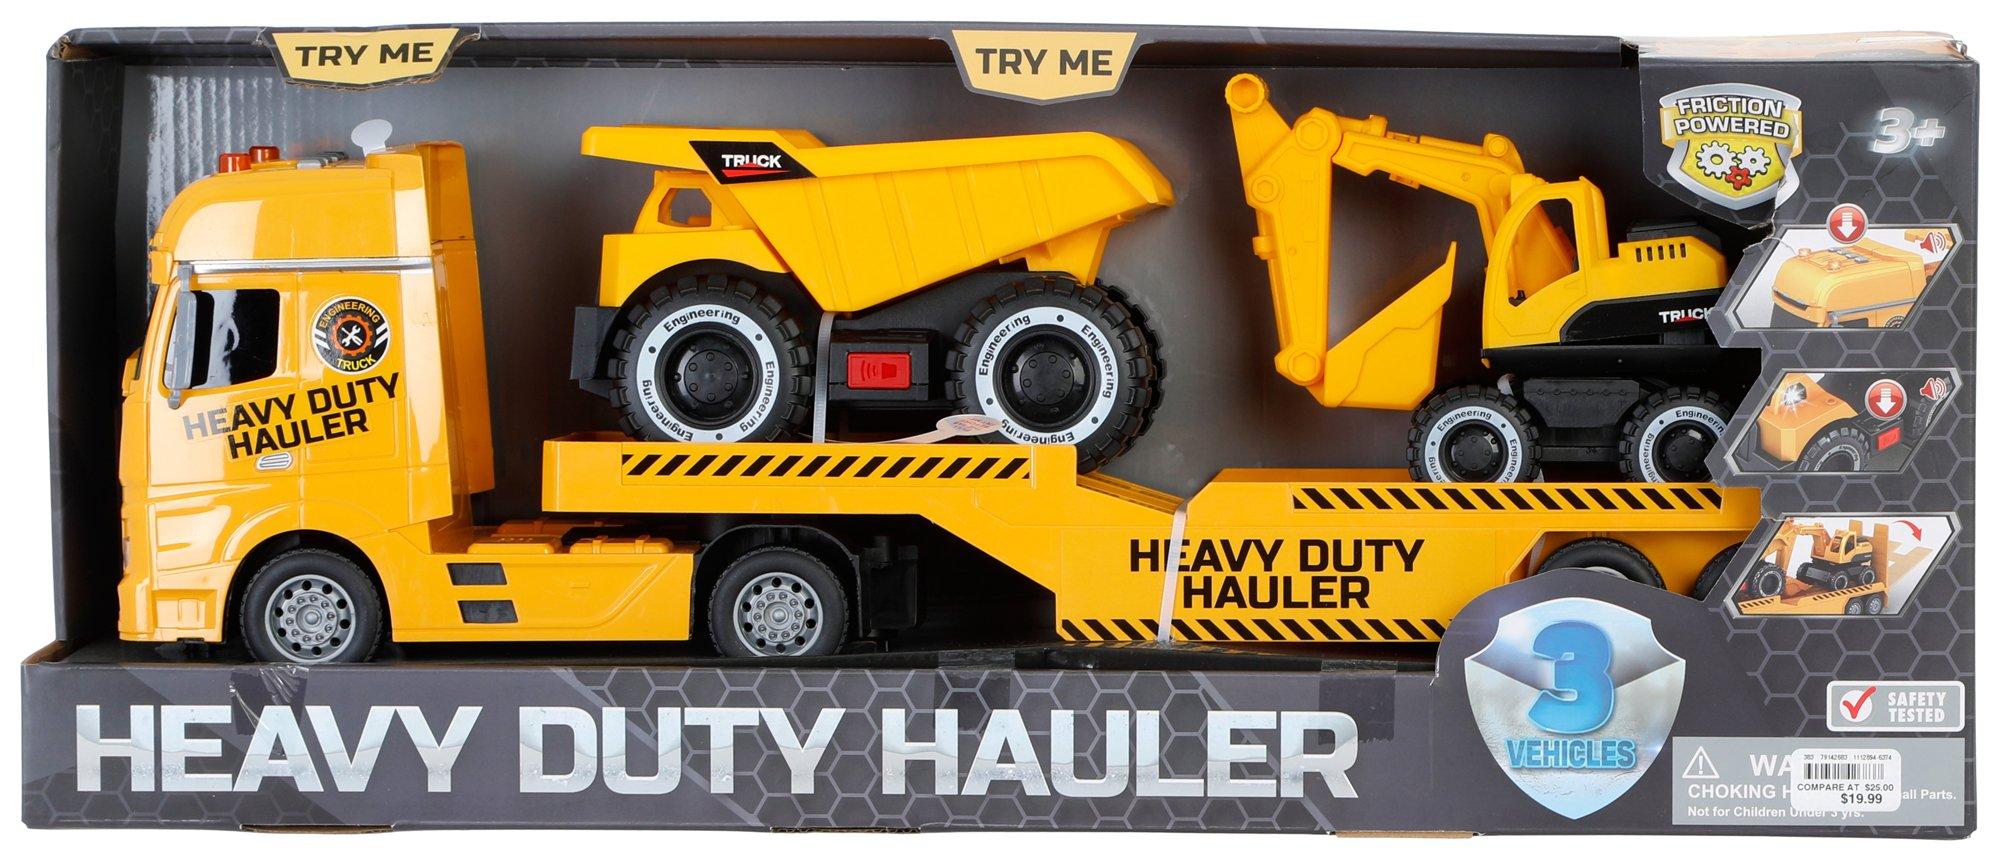 Kids Heavy Duty Hauler Toy